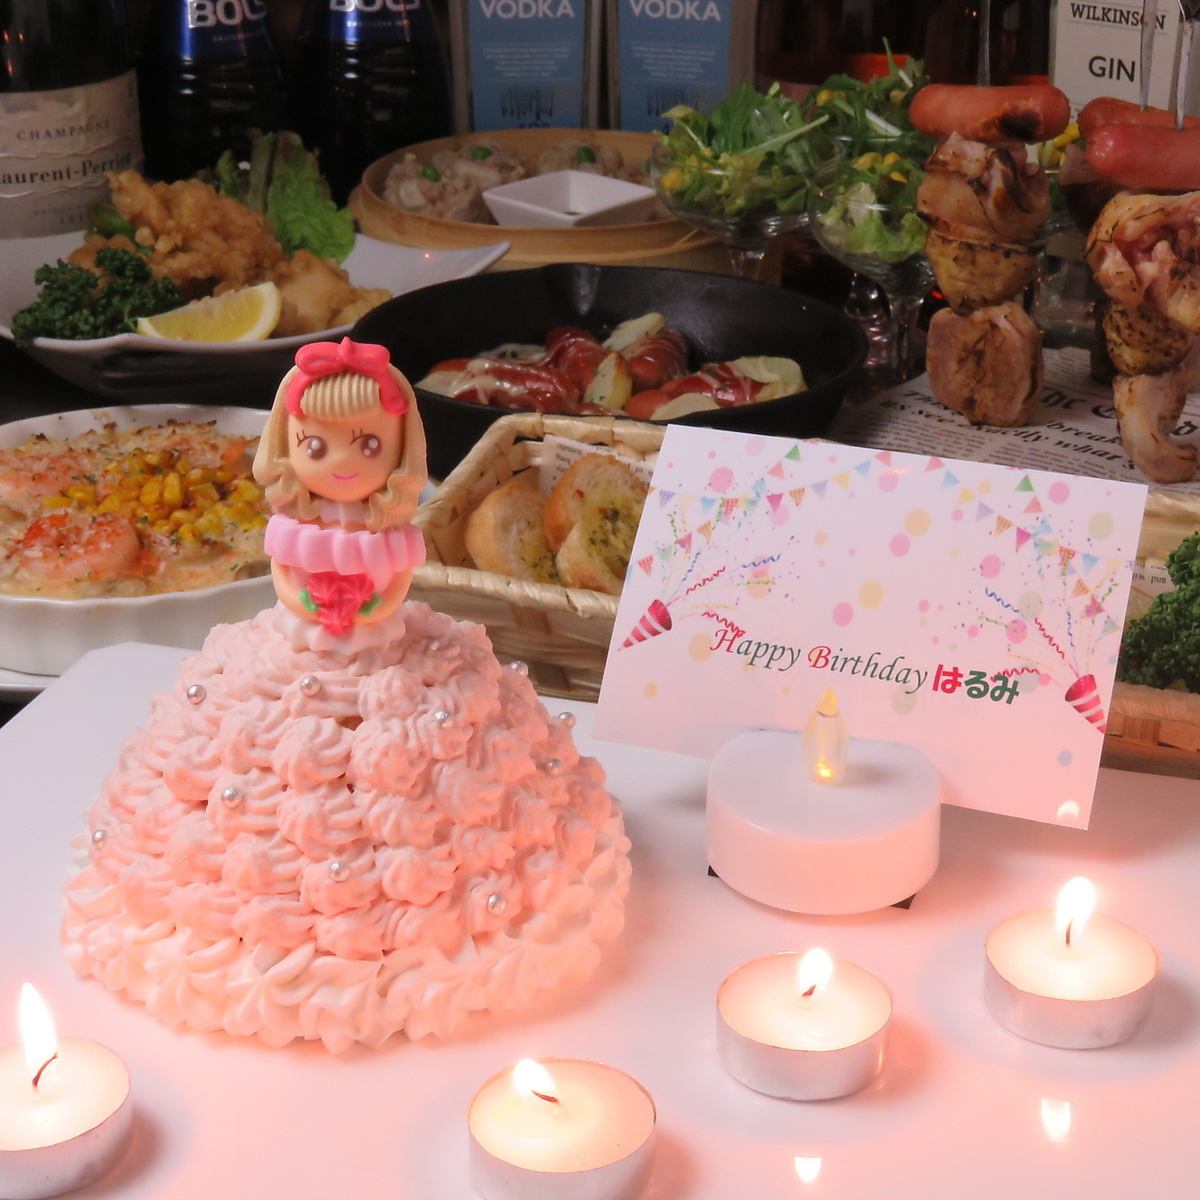 請在您的生日或週年紀念日♪用周年紀念娃娃蛋糕的課程慶祝